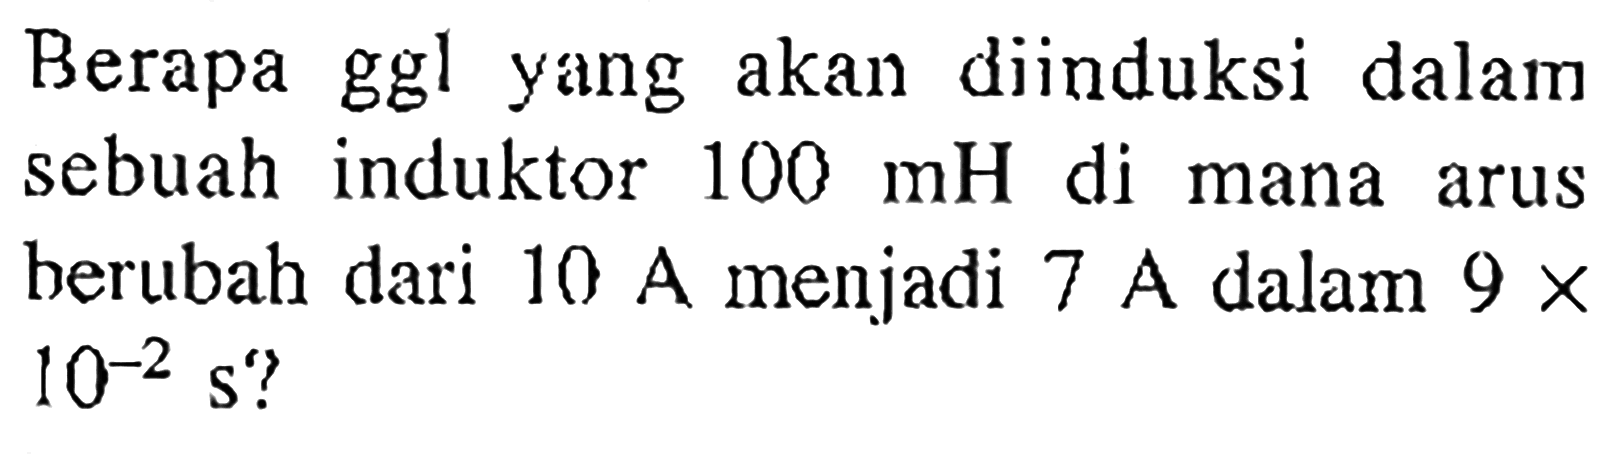 Berapa ggl yang akan diinduksi dalam sebuah induktor 100 mH di mana arus berubah dari 10 A menjadi 7 A dalam 9 x 10^-2 s?